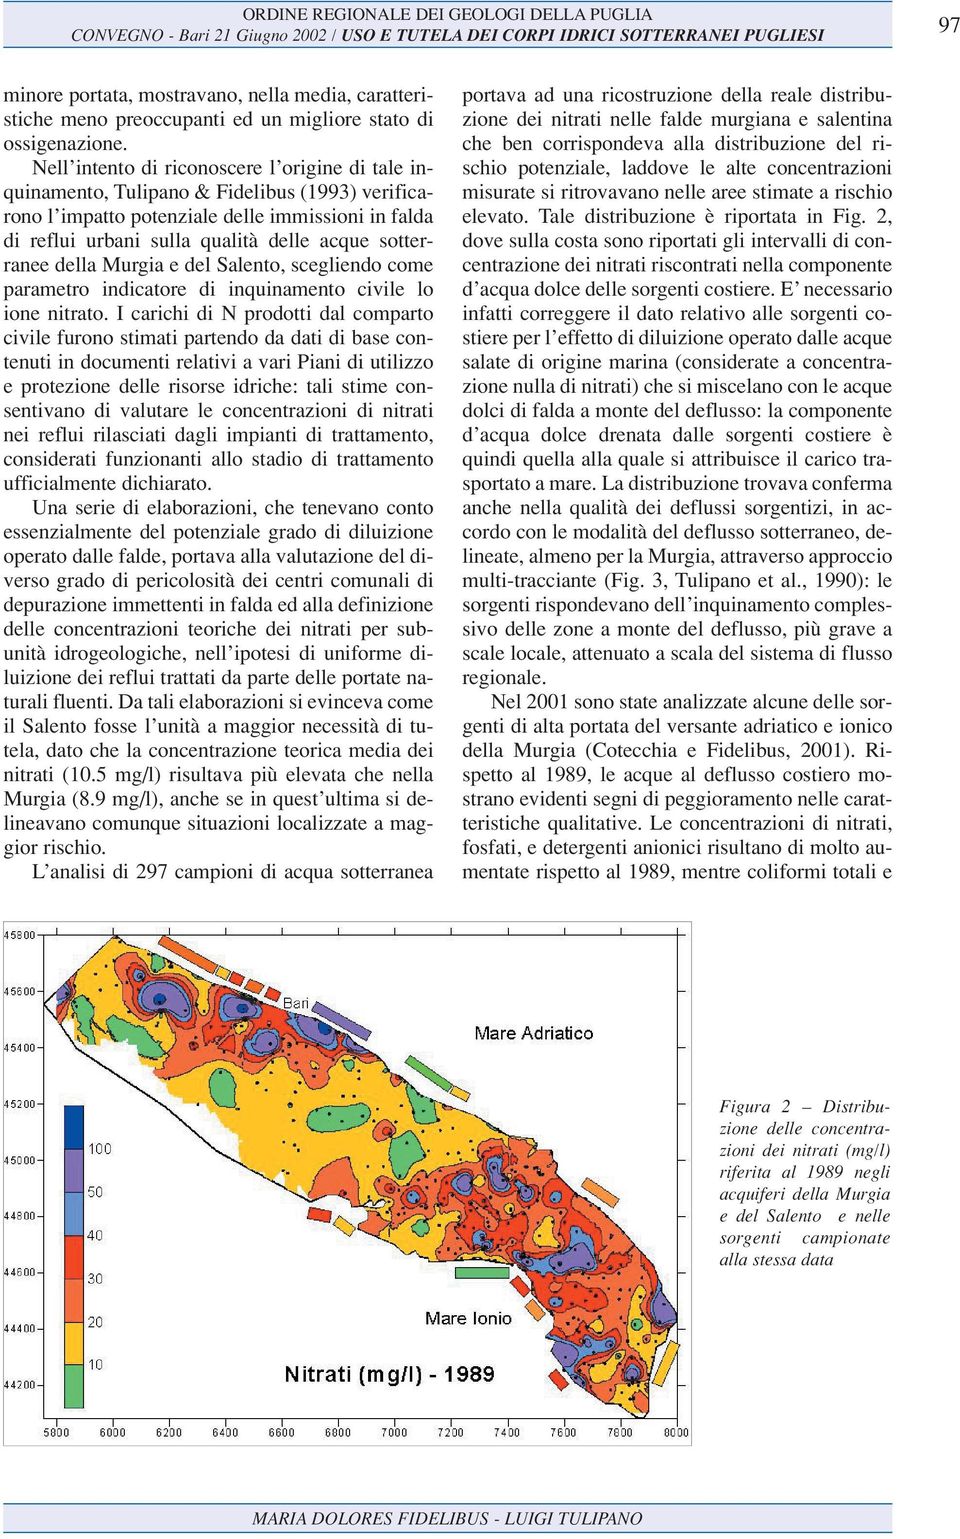 sotterranee della Murgia e del Salento, scegliendo come parametro indicatore di inquinamento civile lo ione nitrato.